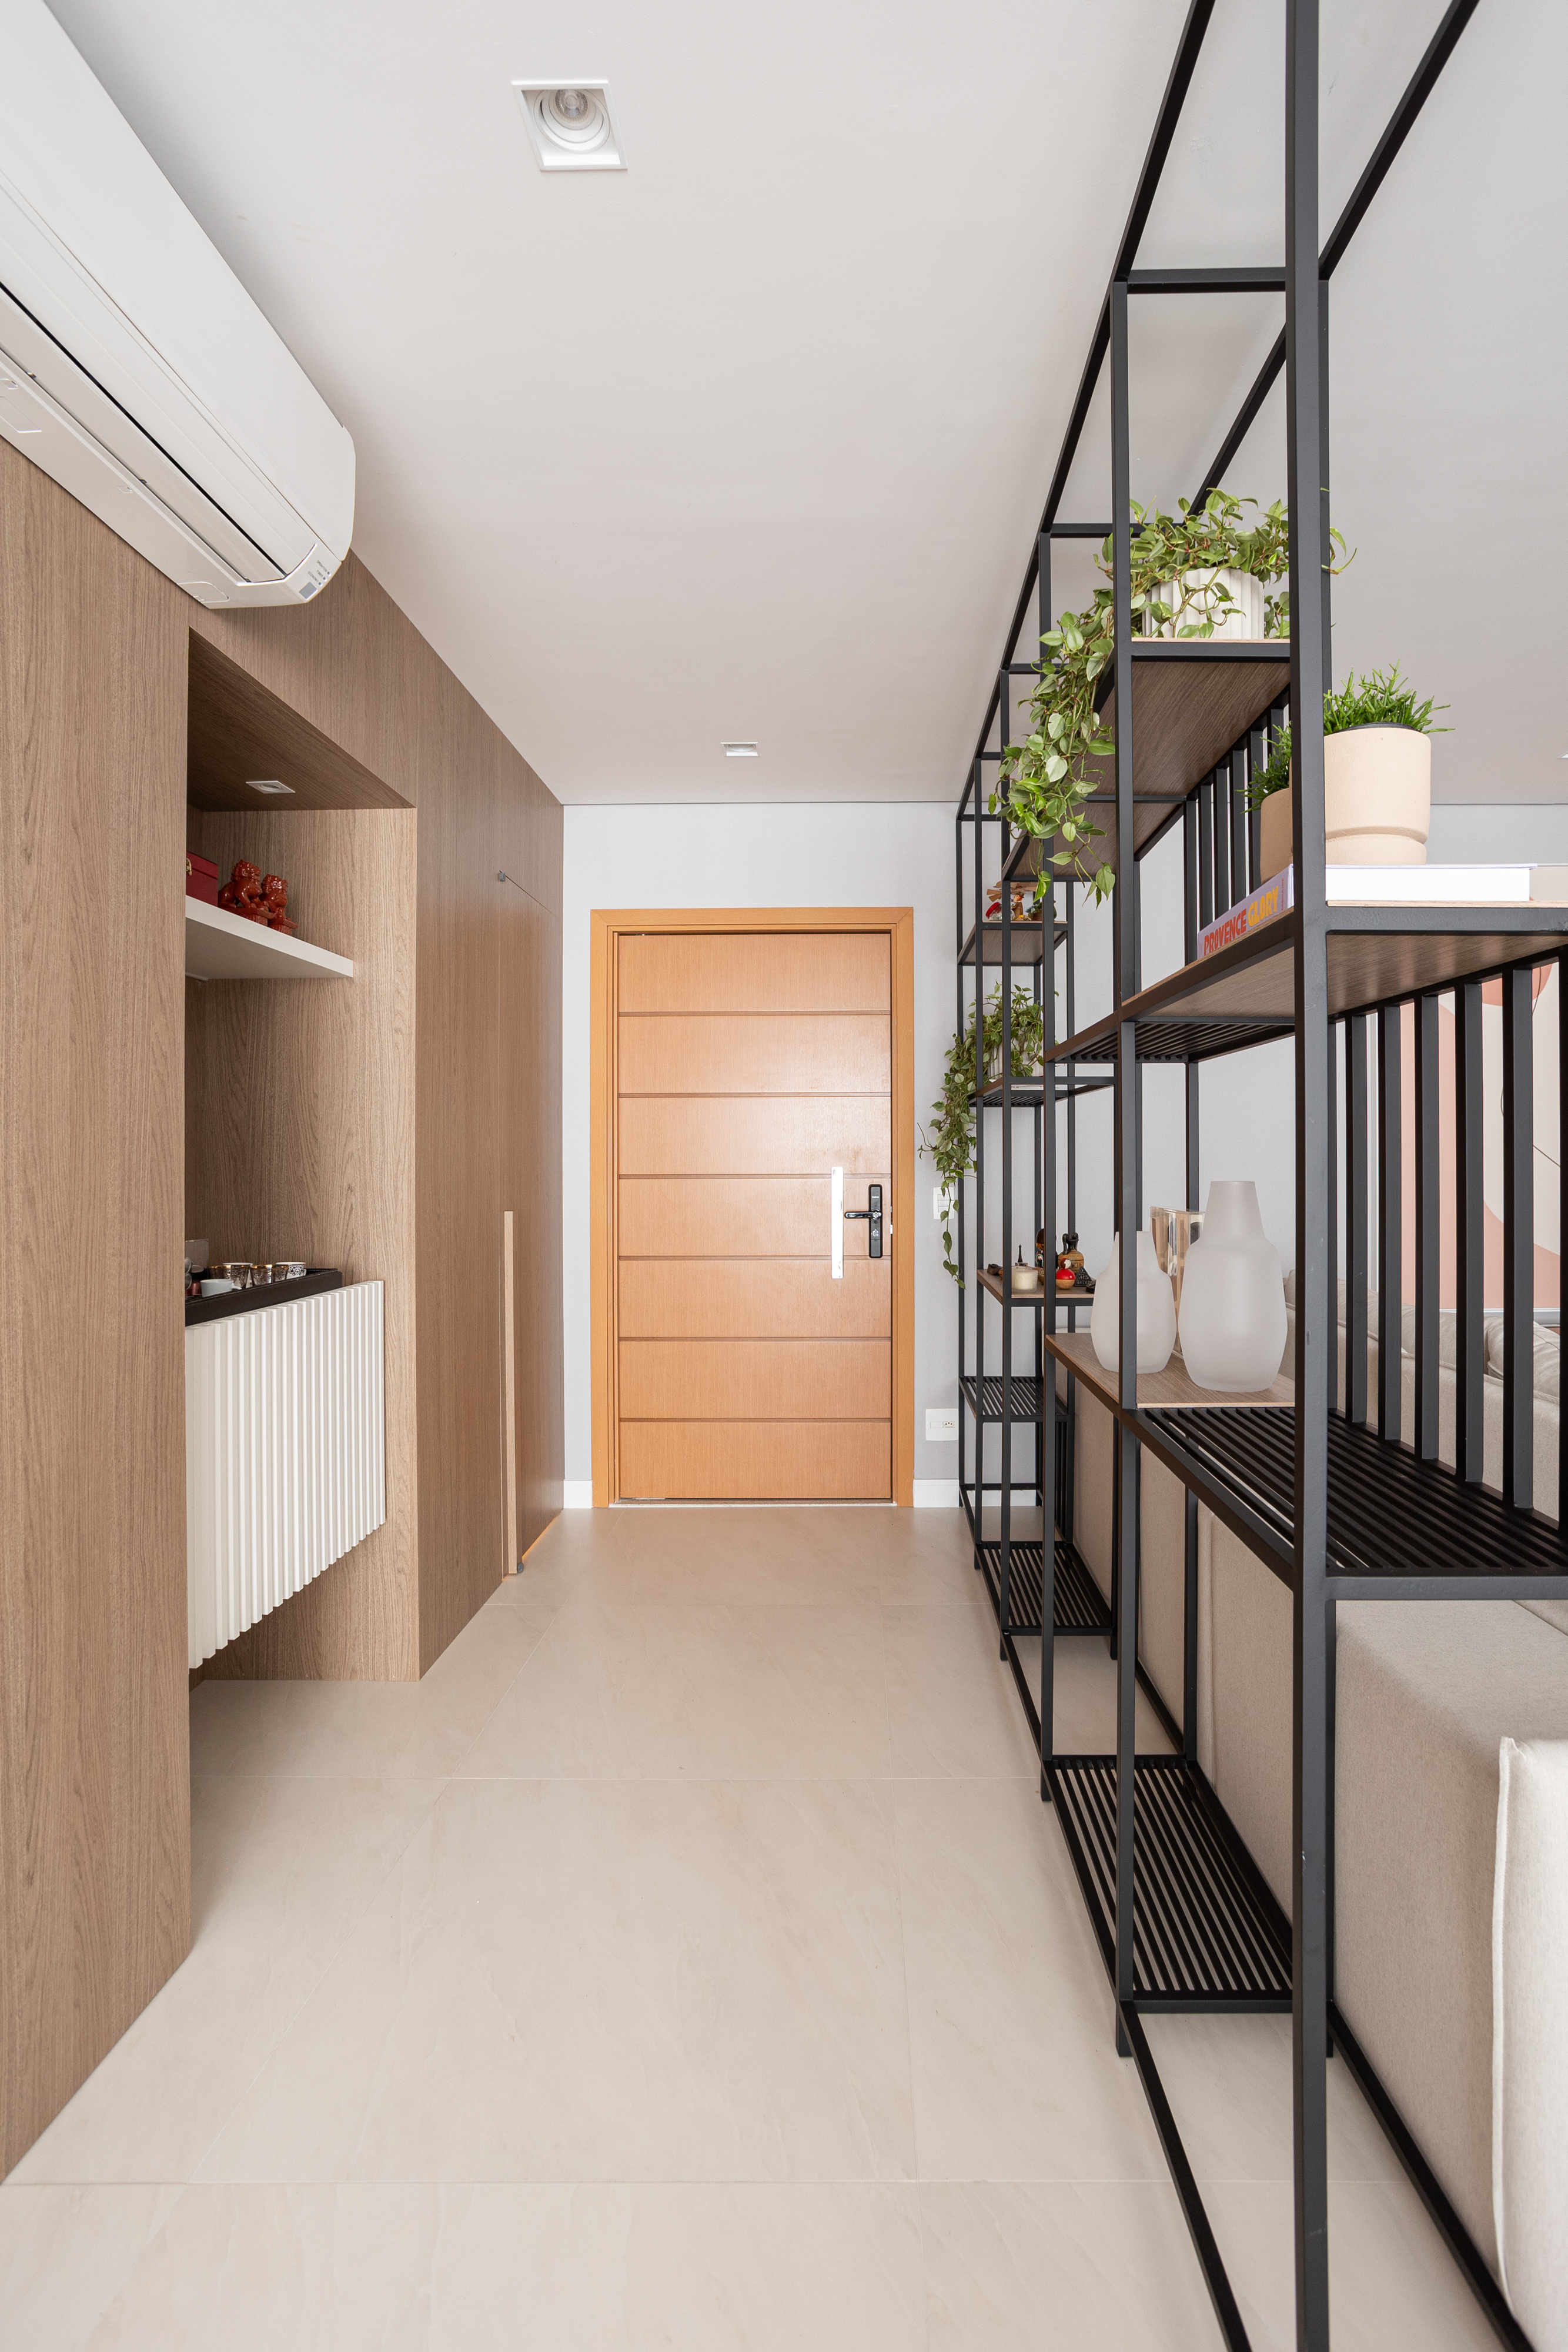 Apartamento de 140 m² possui parede de pedra moledo e quarto montessoriano. Projeto Loft 7 Arquitetura. Na foto, hall de entrada com estante de serralheira e canto do café.